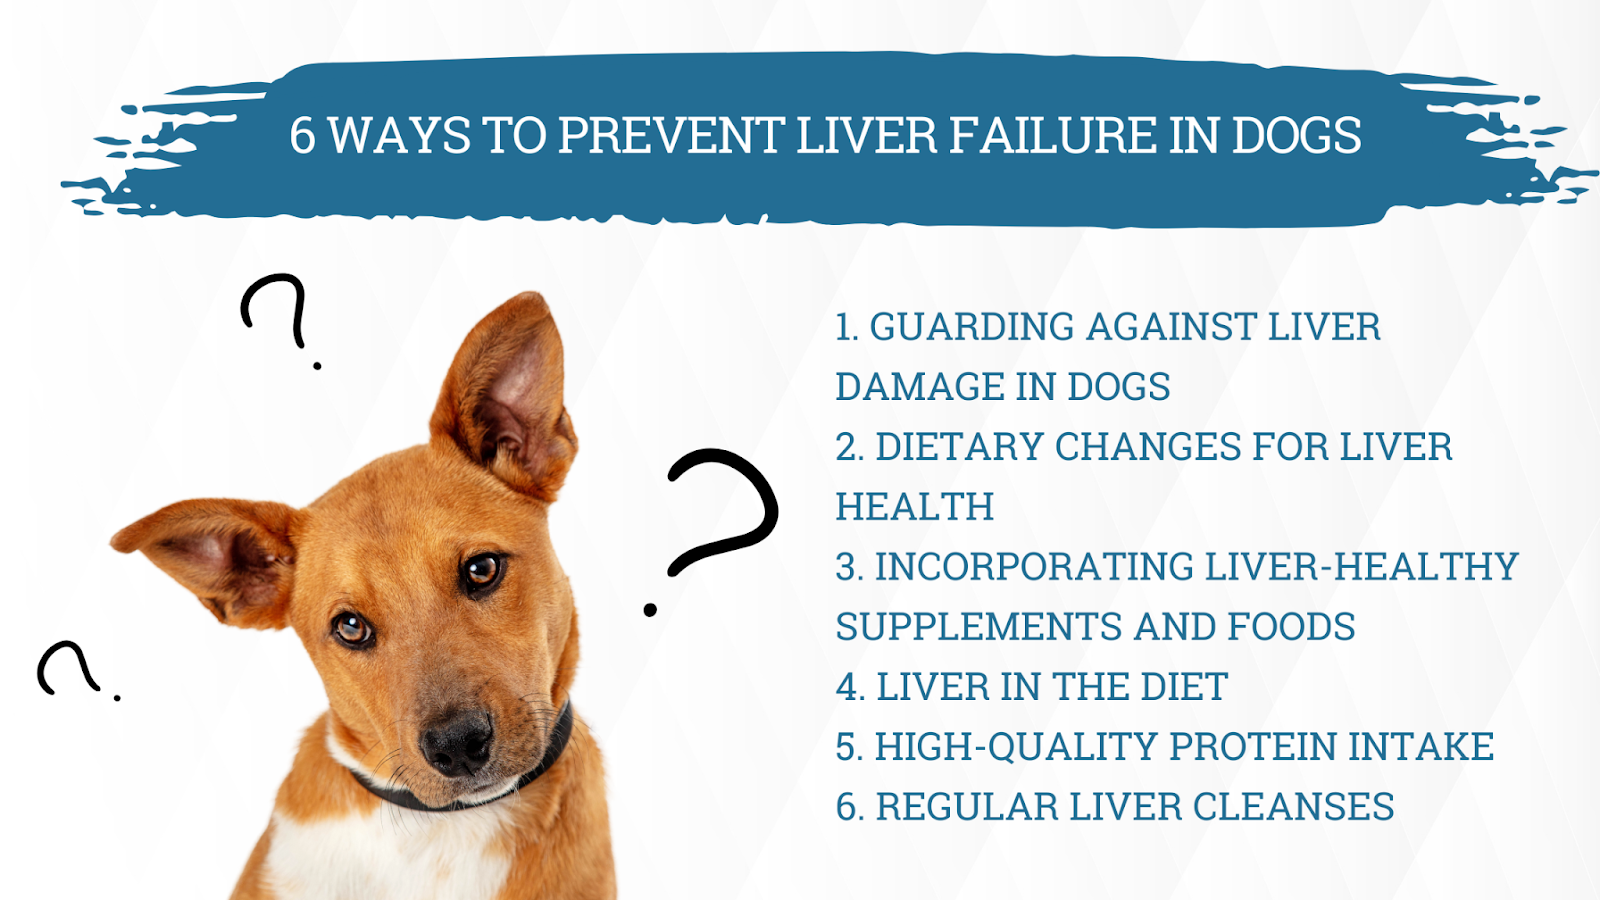 Prevent liver failure in dogs